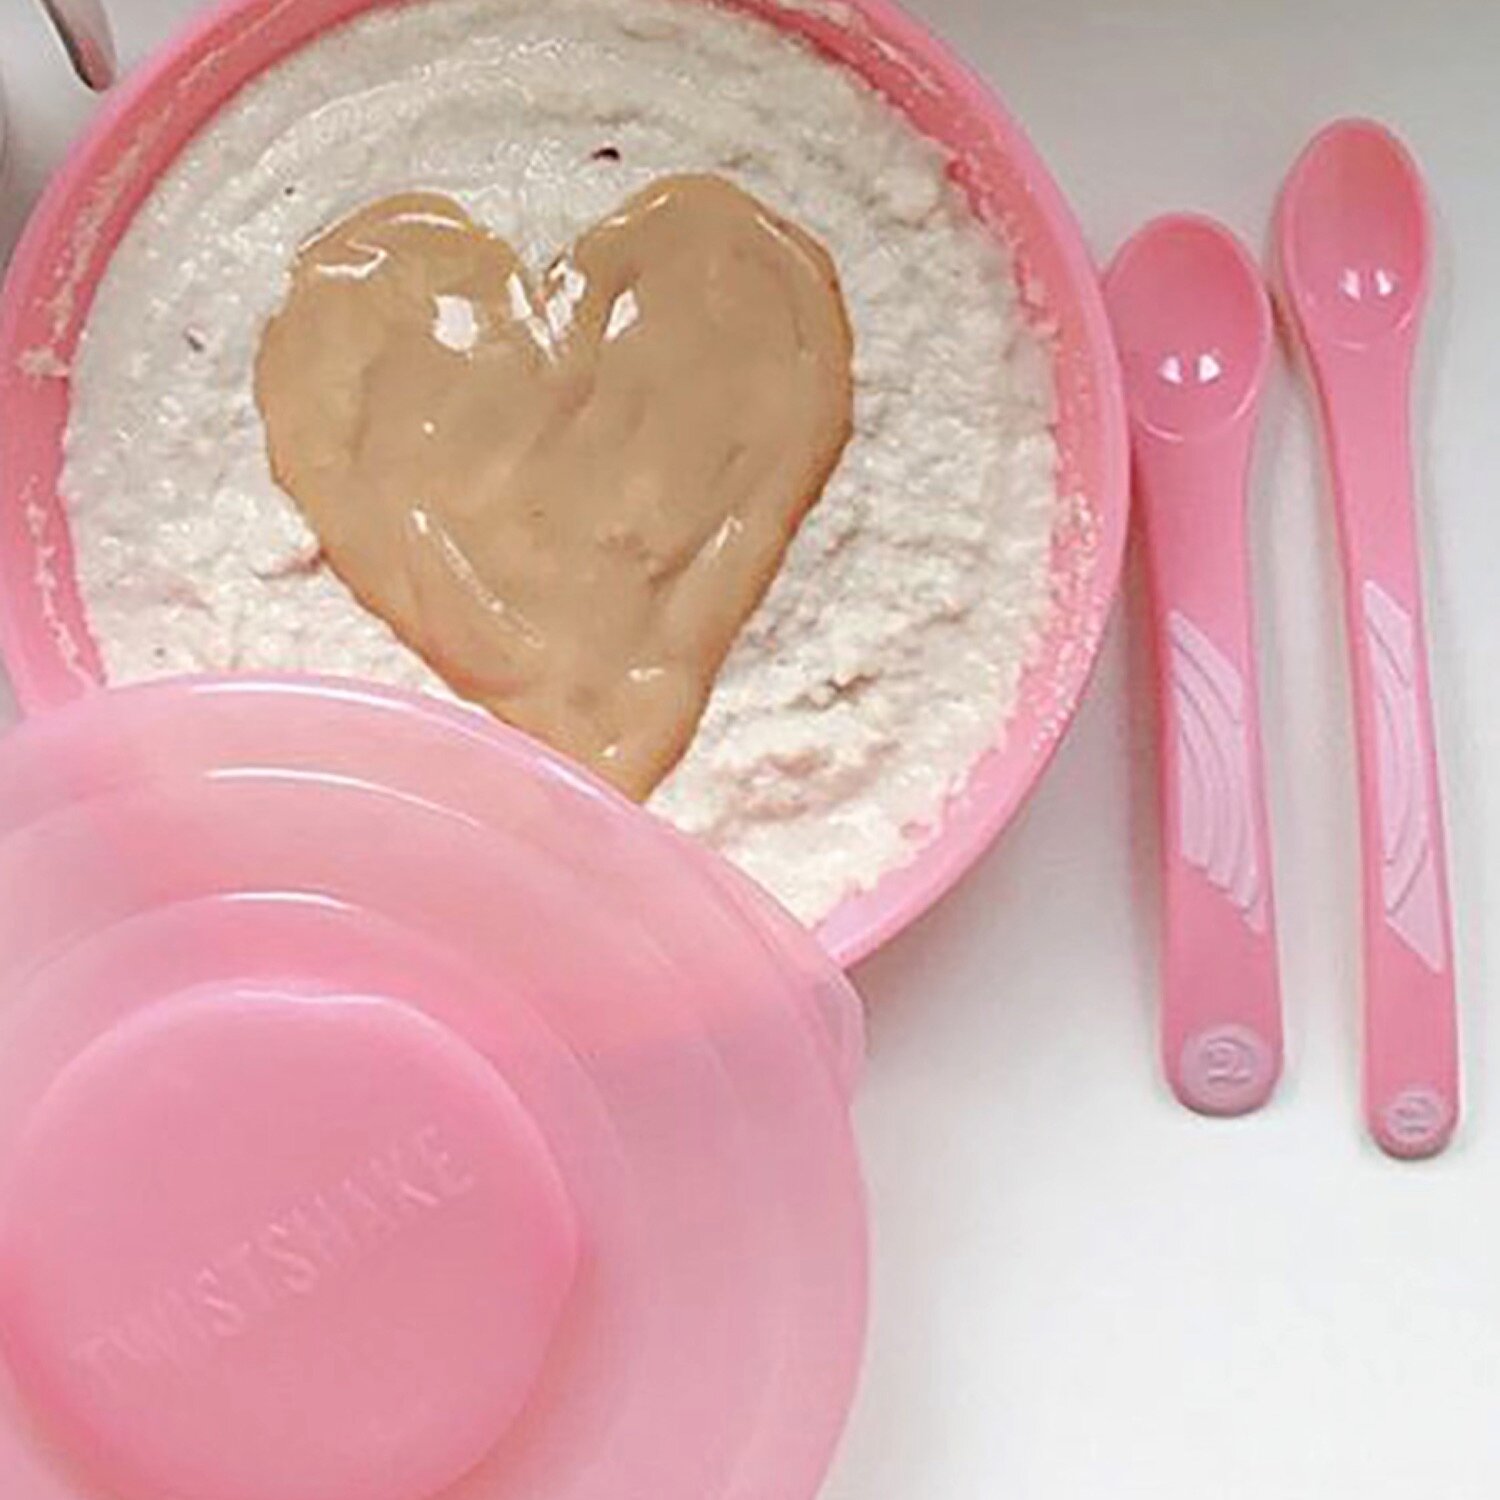 Ложки для кормления Twistshake (Feeding Spoon) в наборе из 3 шт. Пастельный розовый (Pastel Pink). Возраст 4+m. Арт. 78179